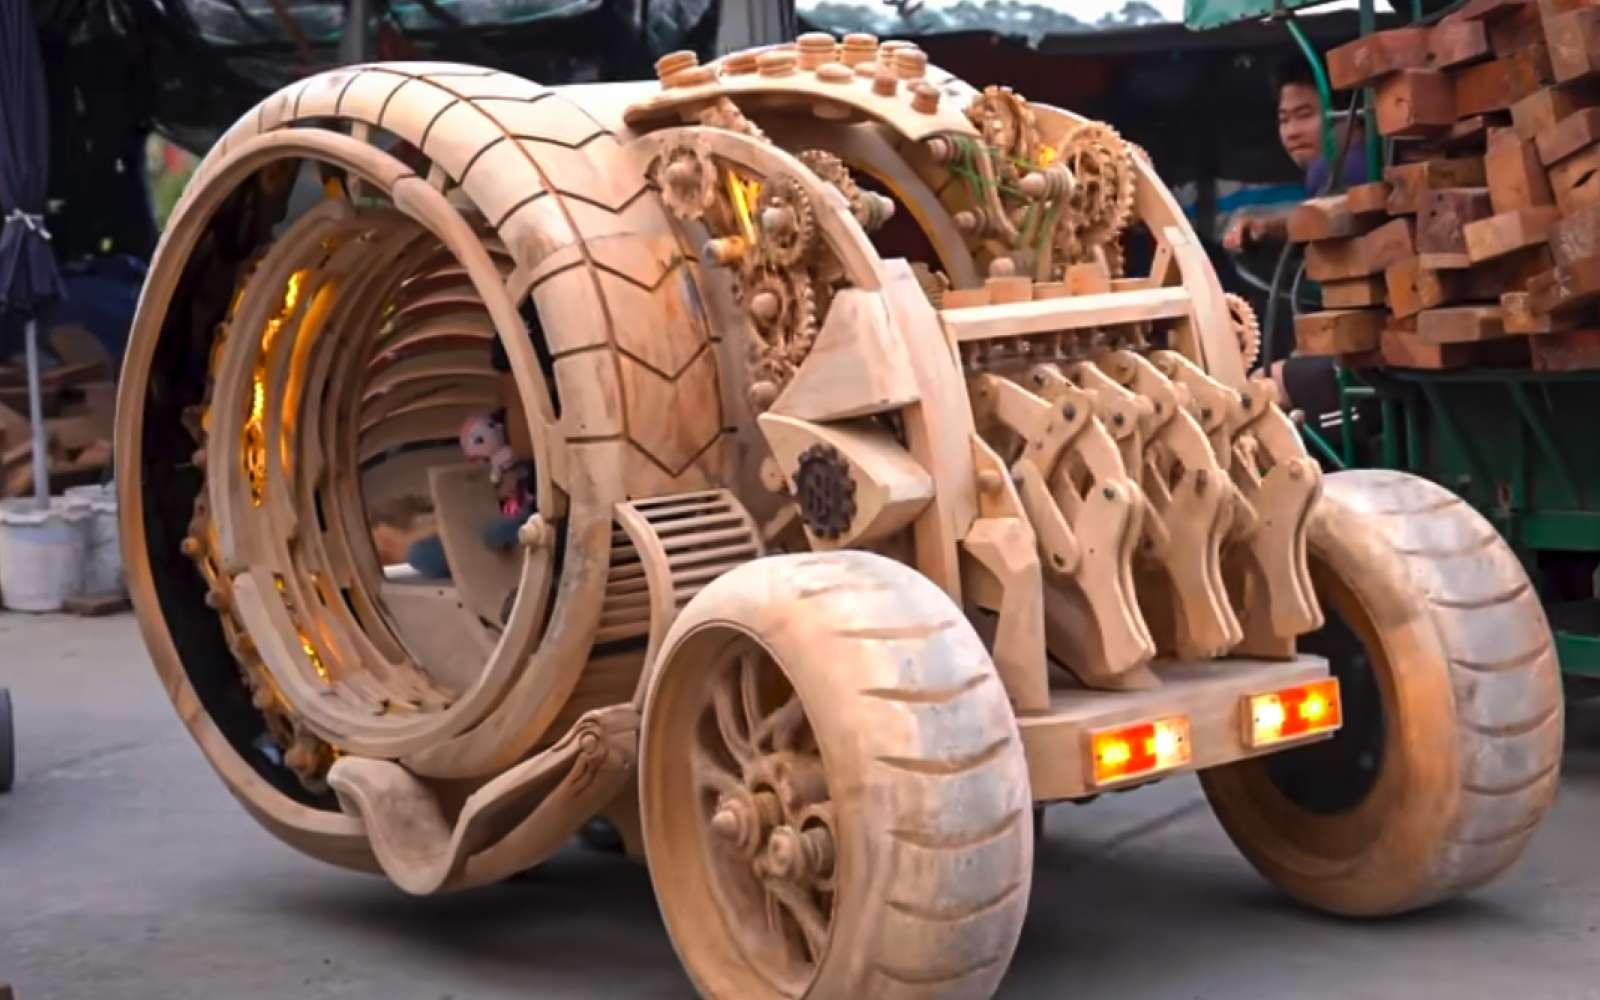 Une étonnante machine à remonter le temps en bois circule au Vietnam